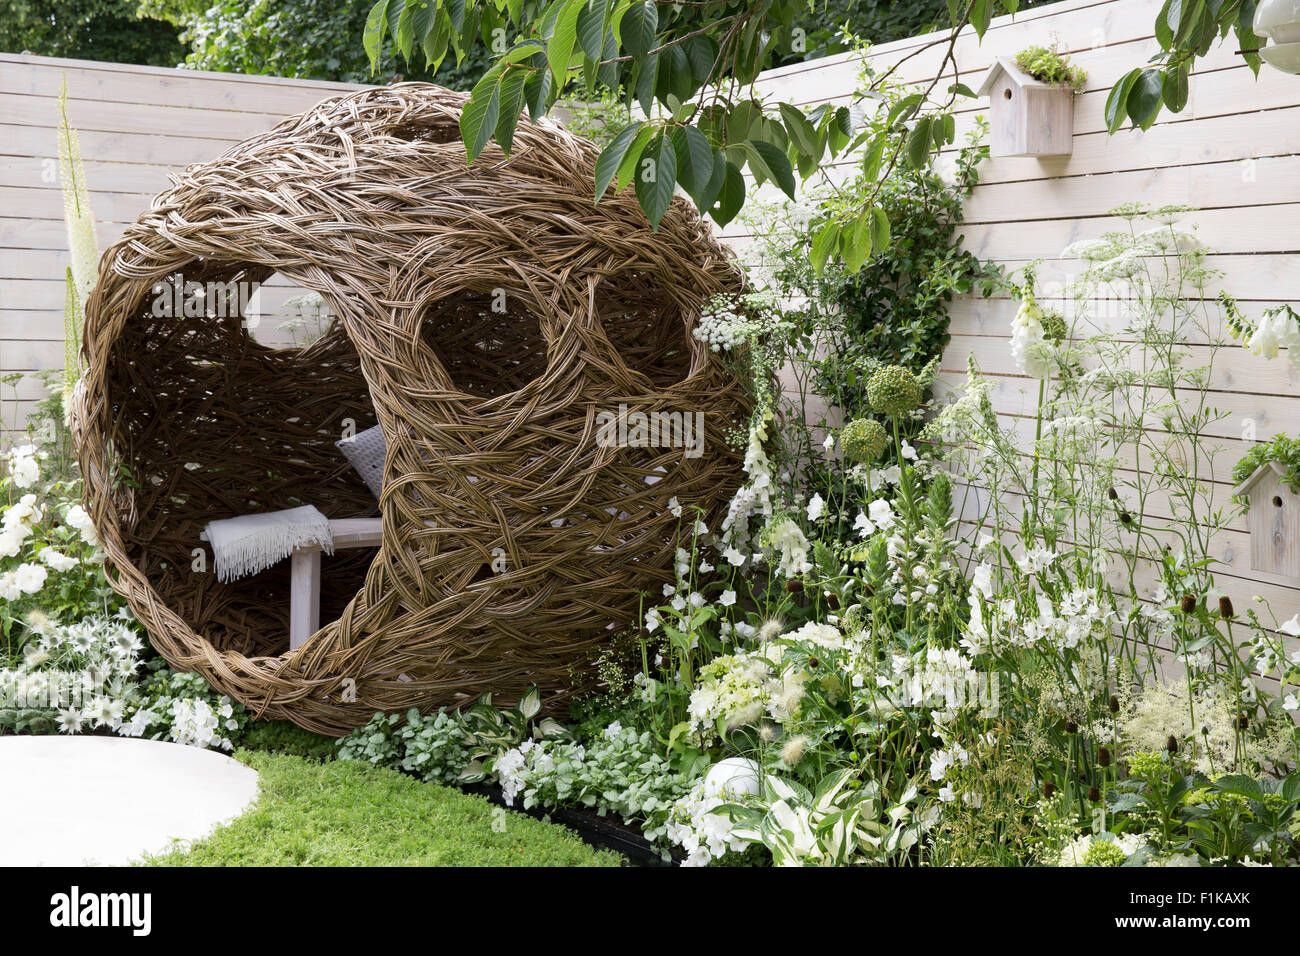 Une petite faune urbaine oiseaux convivial jardin camomille pelouse marche pierres et une gousse de saule tissée avec banc et coussins - fleurs blanches été Royaume-Uni Banque D'Images